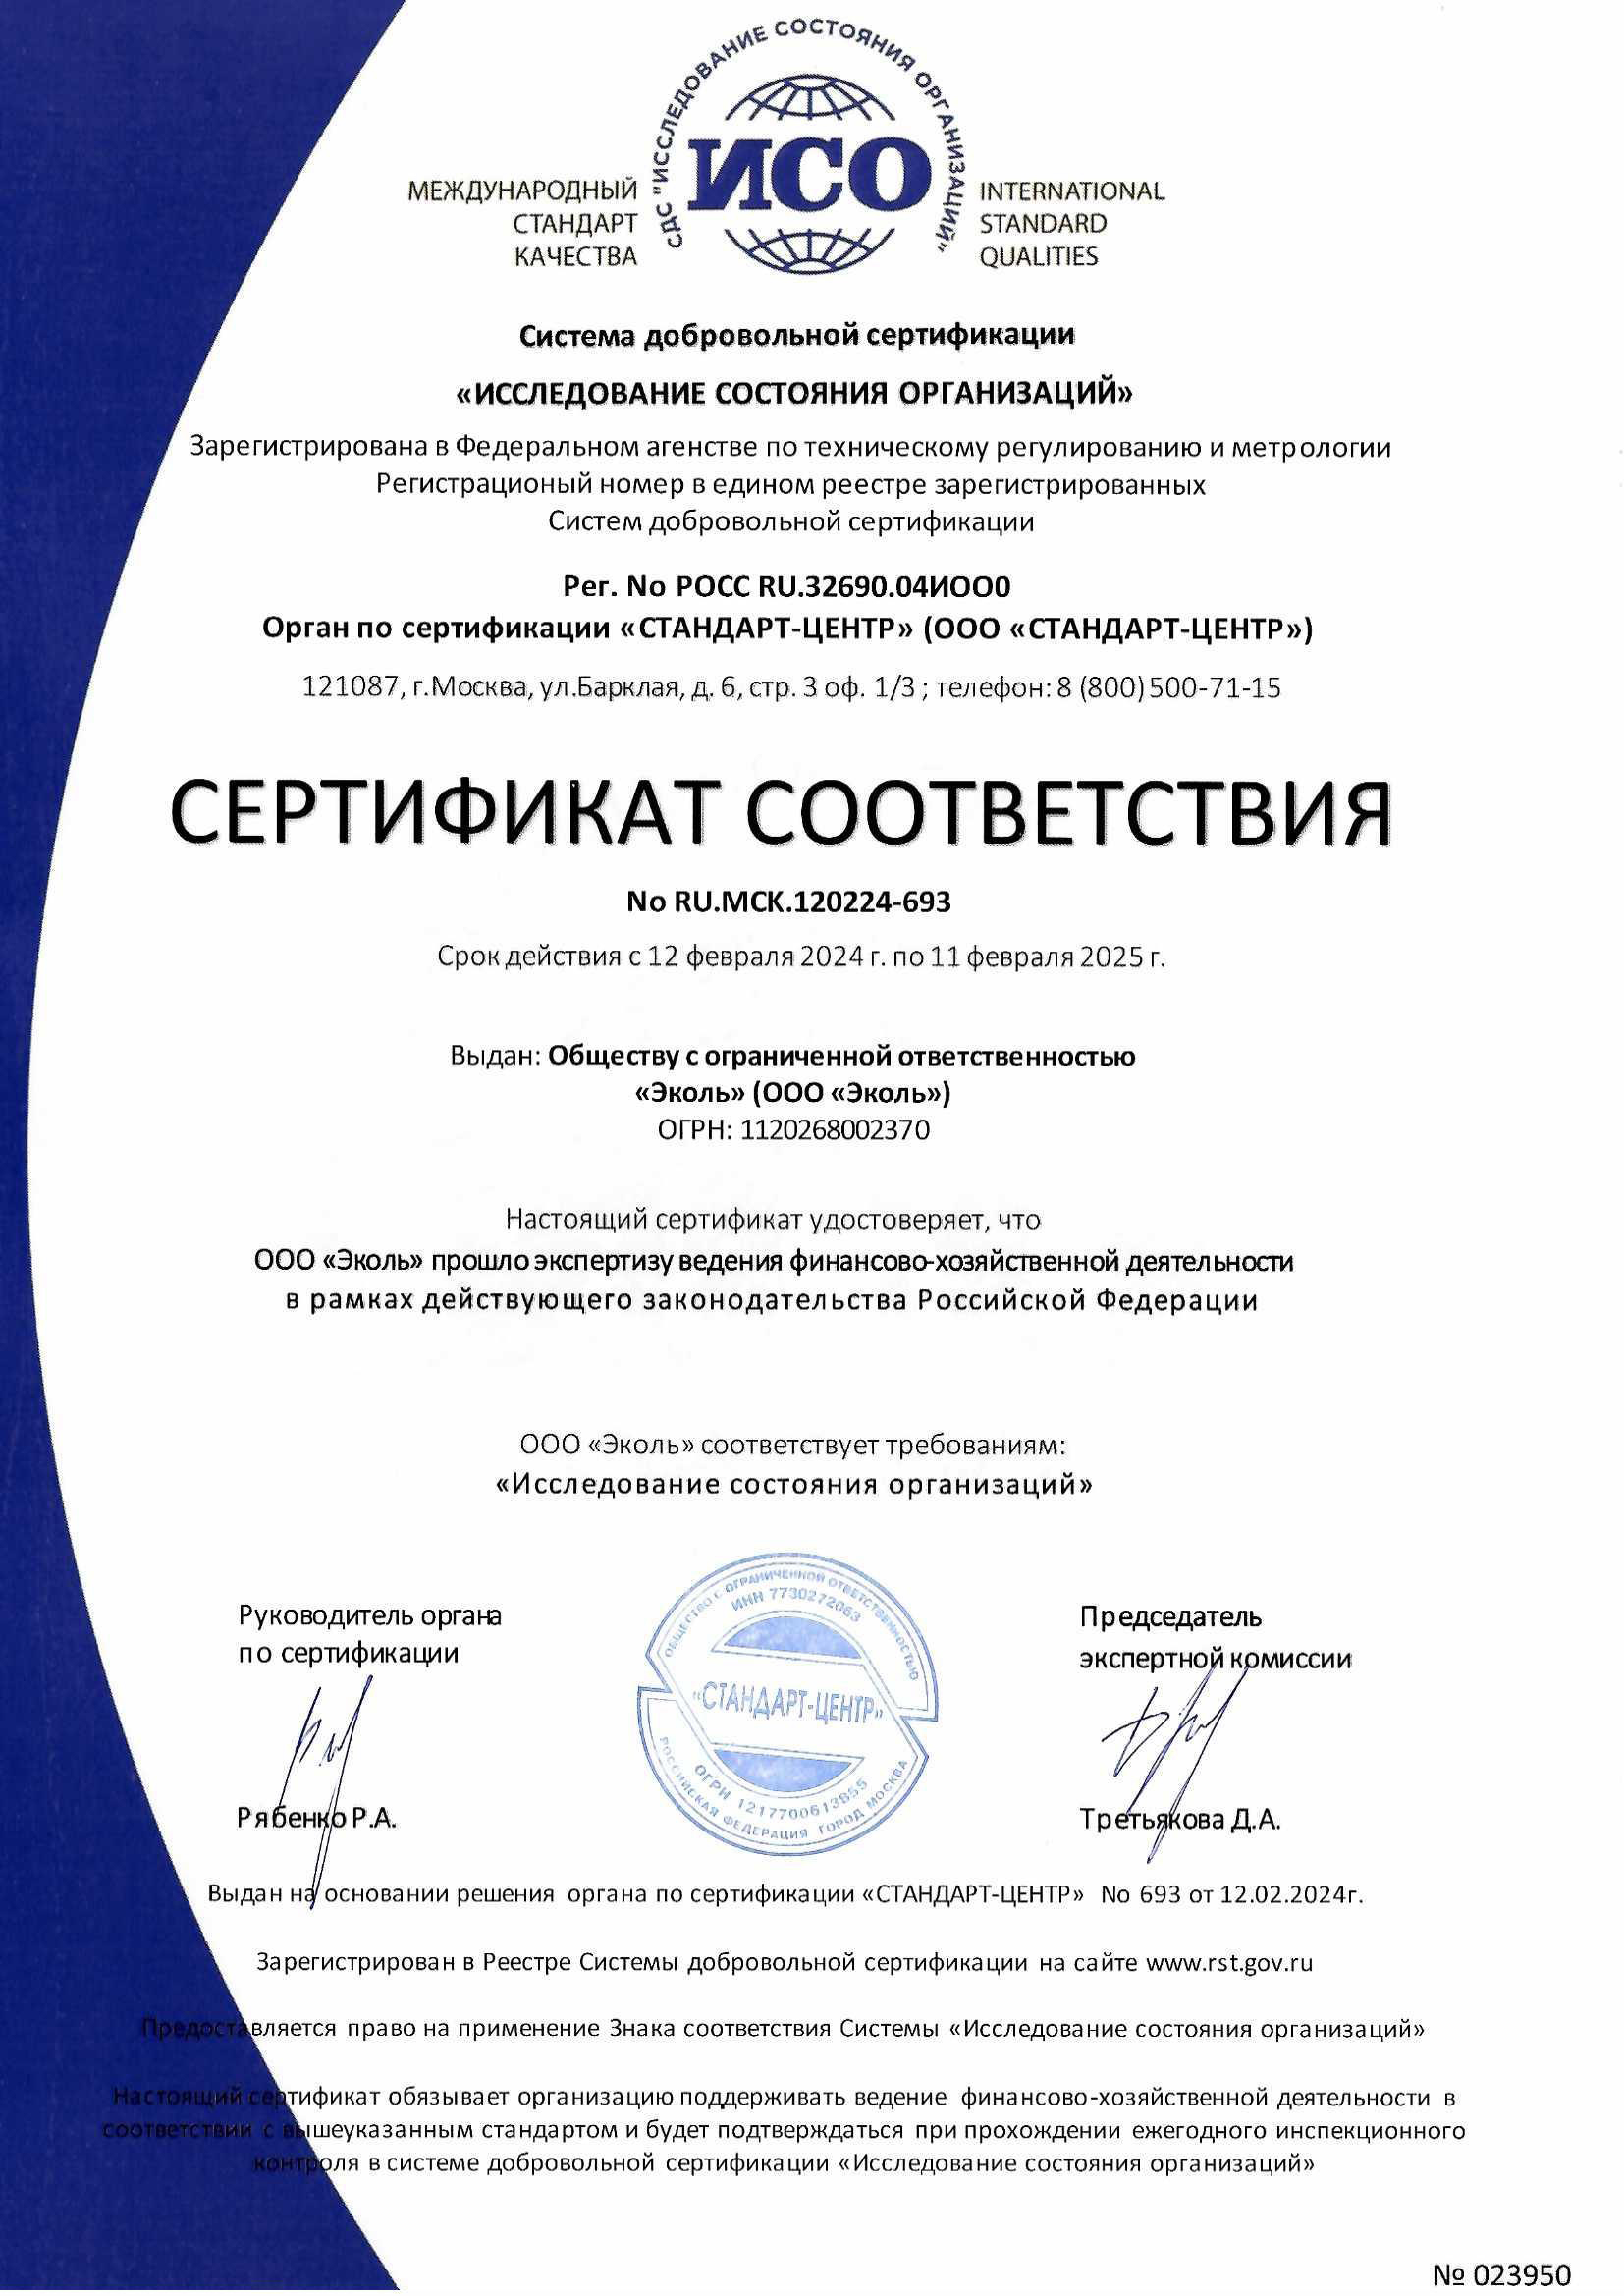 Сертификат соответствия "Исследование состояния организаций"